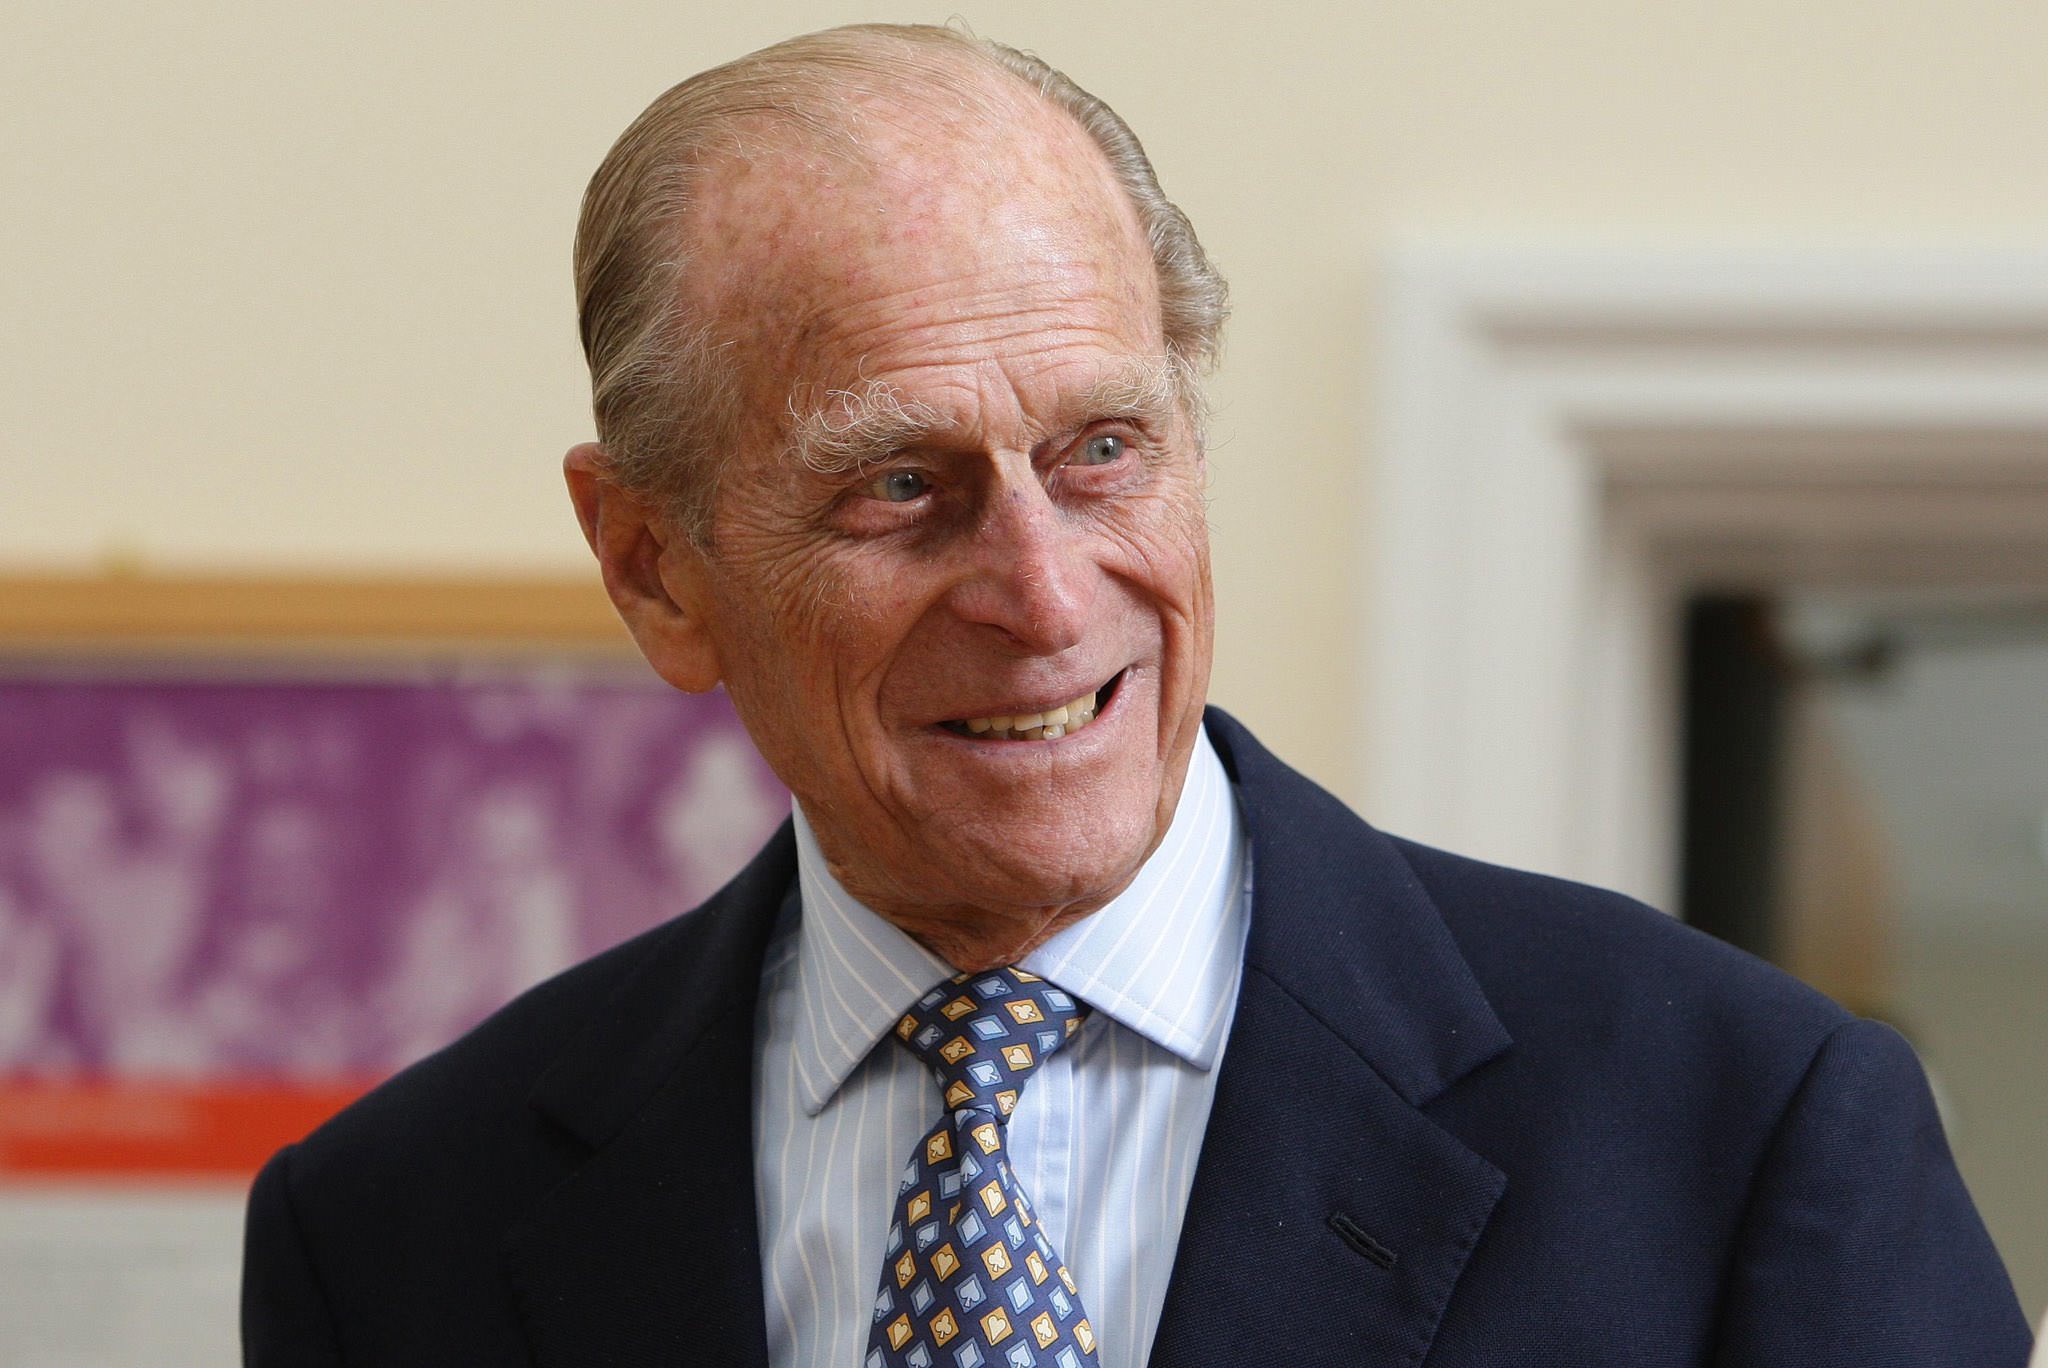 Morre aos 99 anos o príncipe Philip, marido da rainha Elizabeth